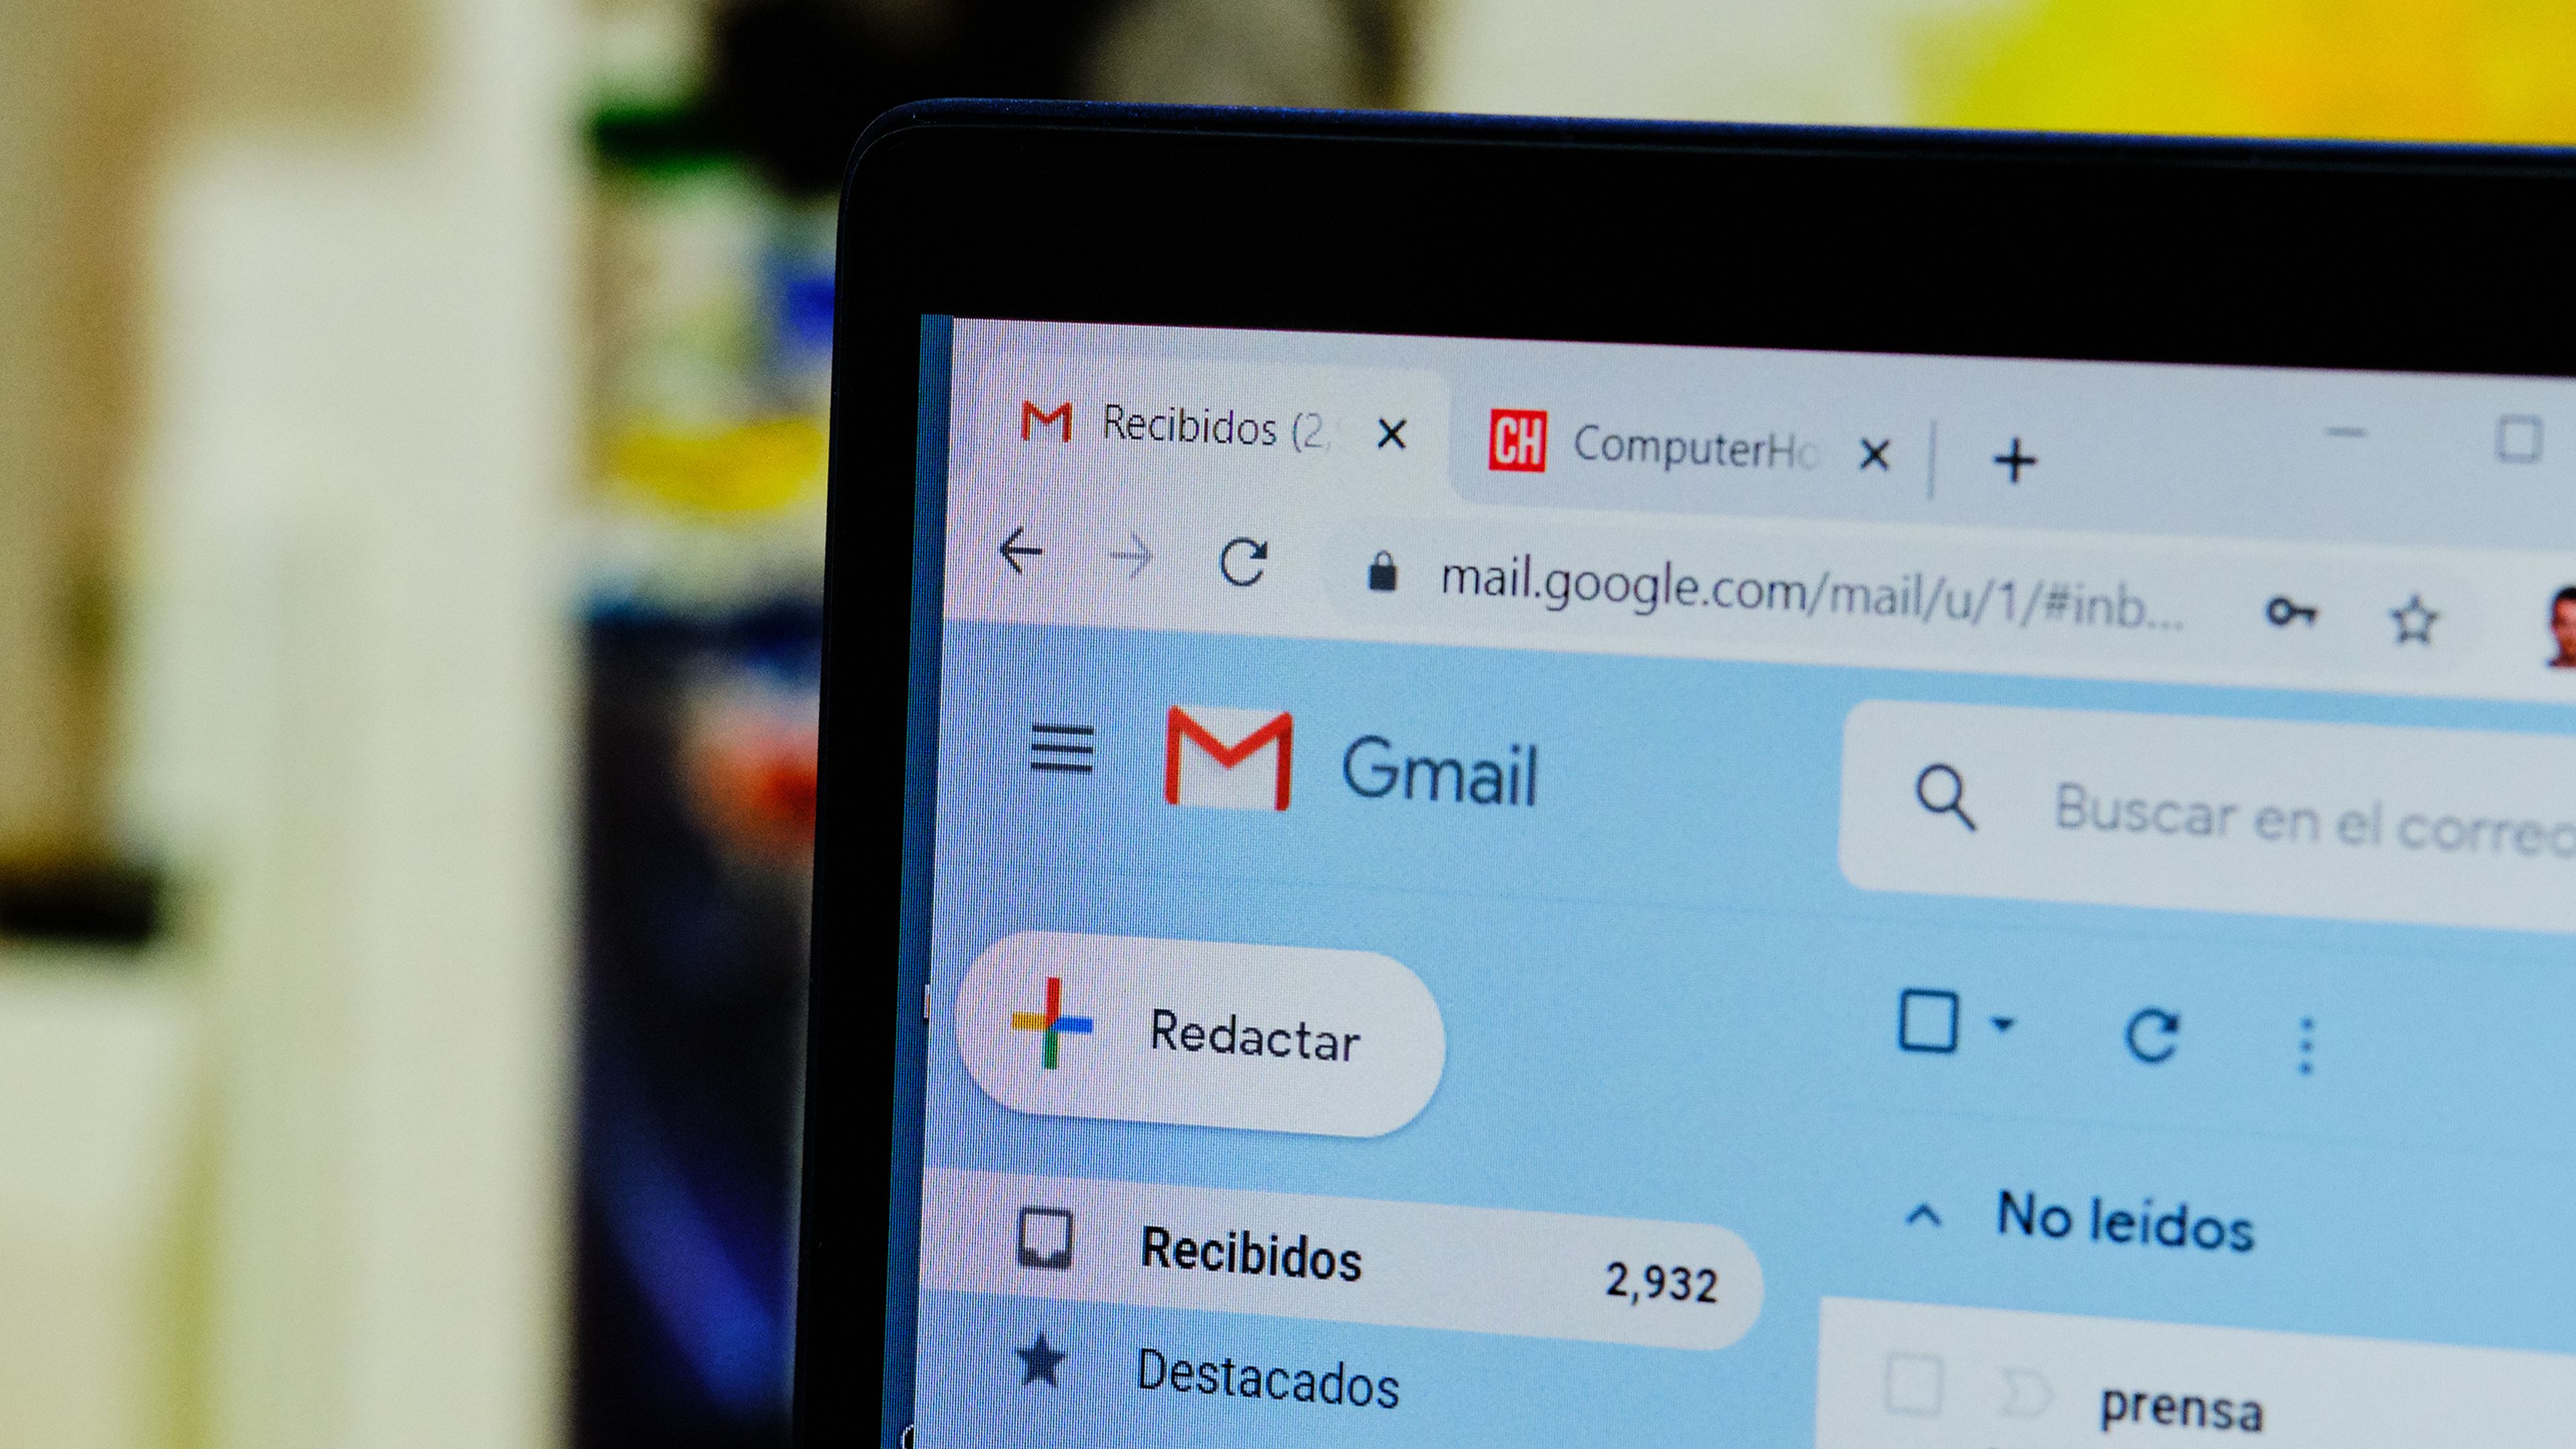 Correo electrónico Gmail: Cómo crear una cuenta e iniciar sesión